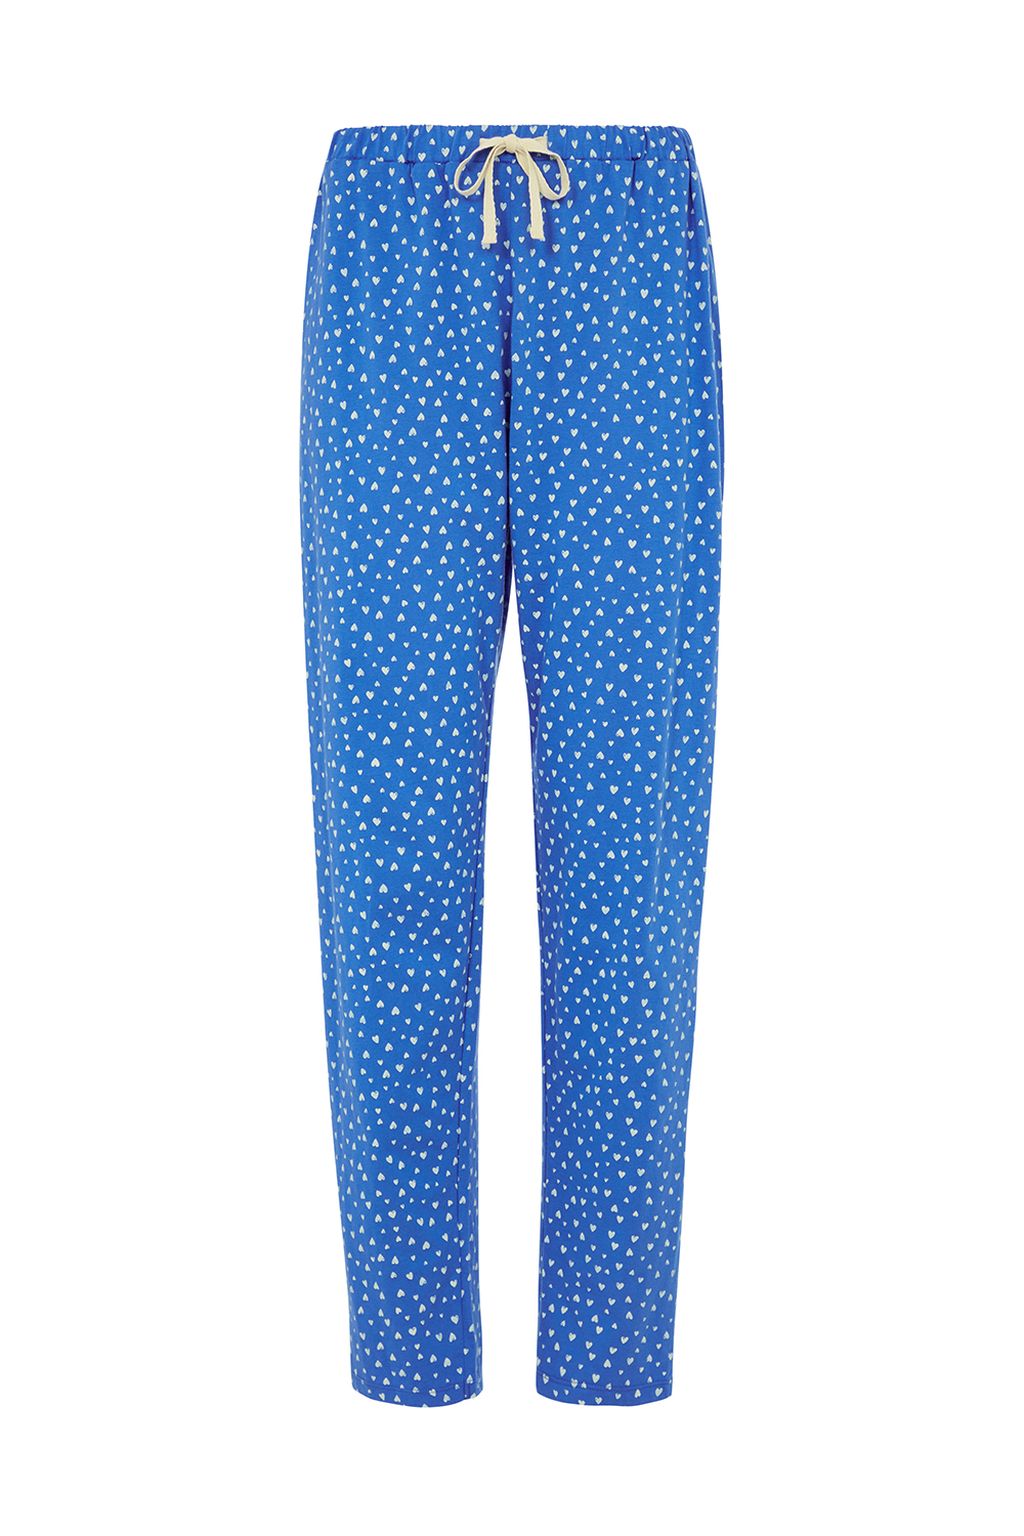 Hearts Pyjama Trousers Blue 12